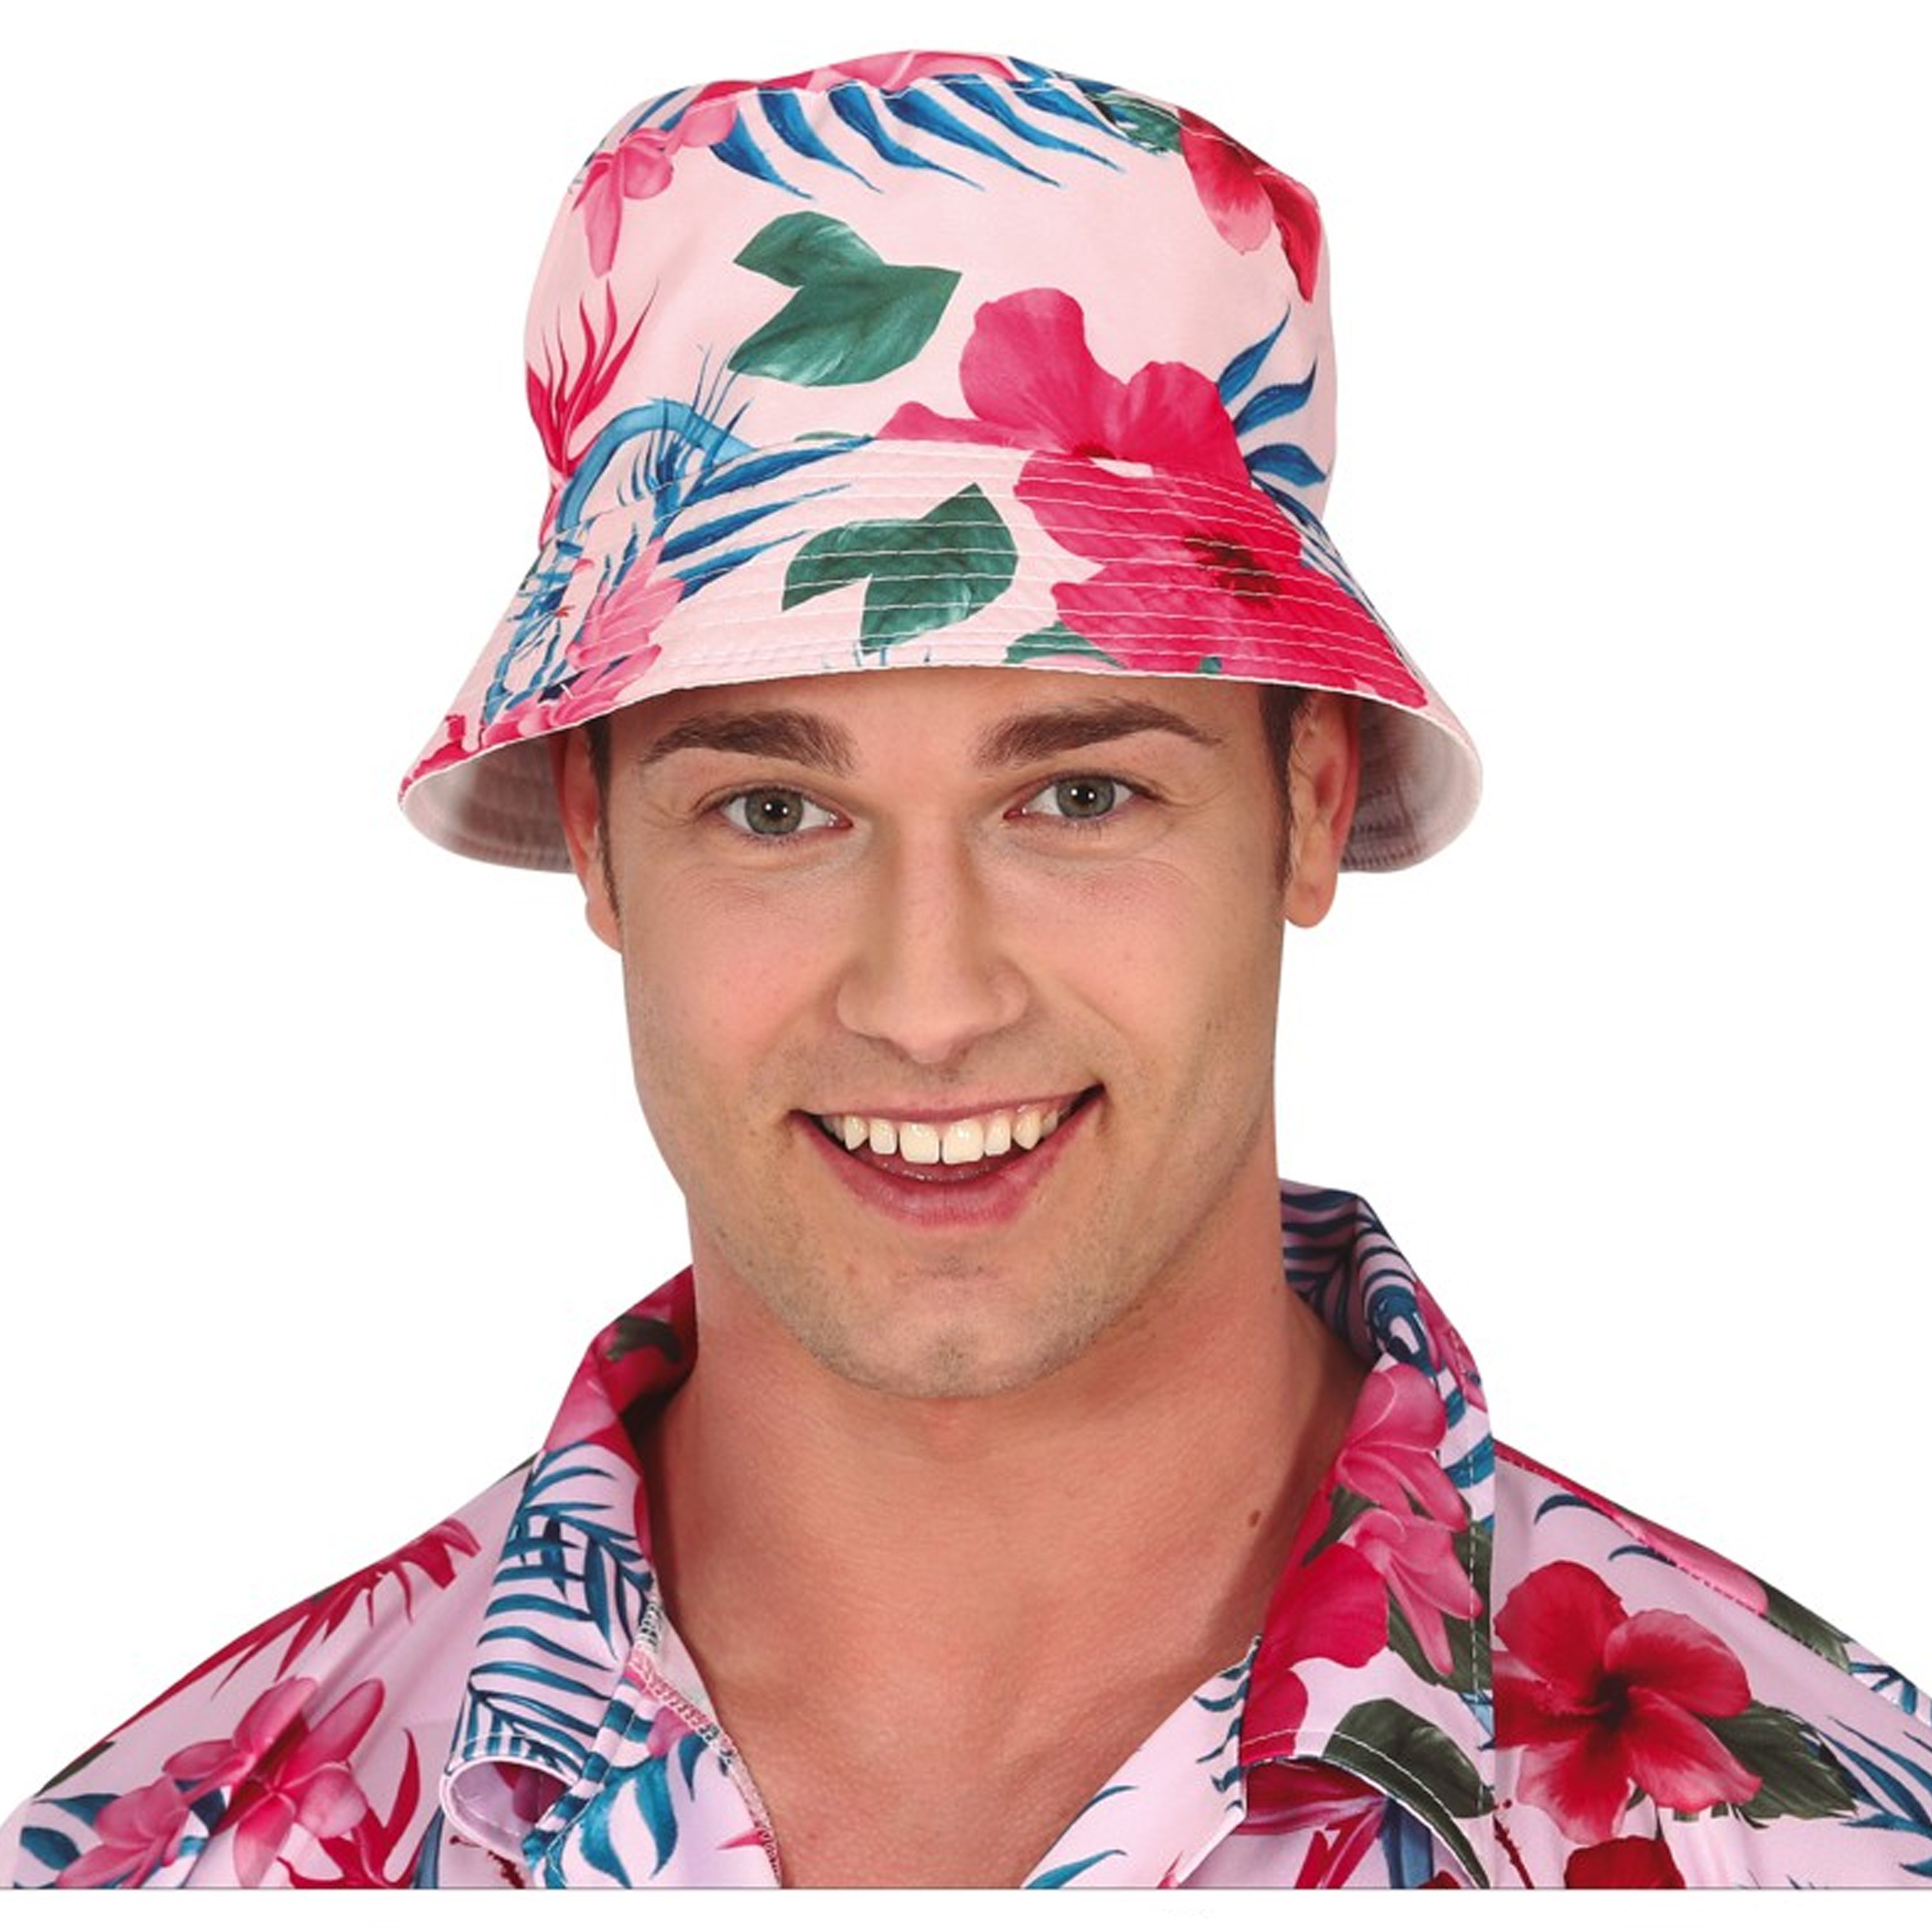 Toppers - Verkleed hoedje voor Tropical Hawaii party - Roze flamingo print - volwassenen - Carnaval